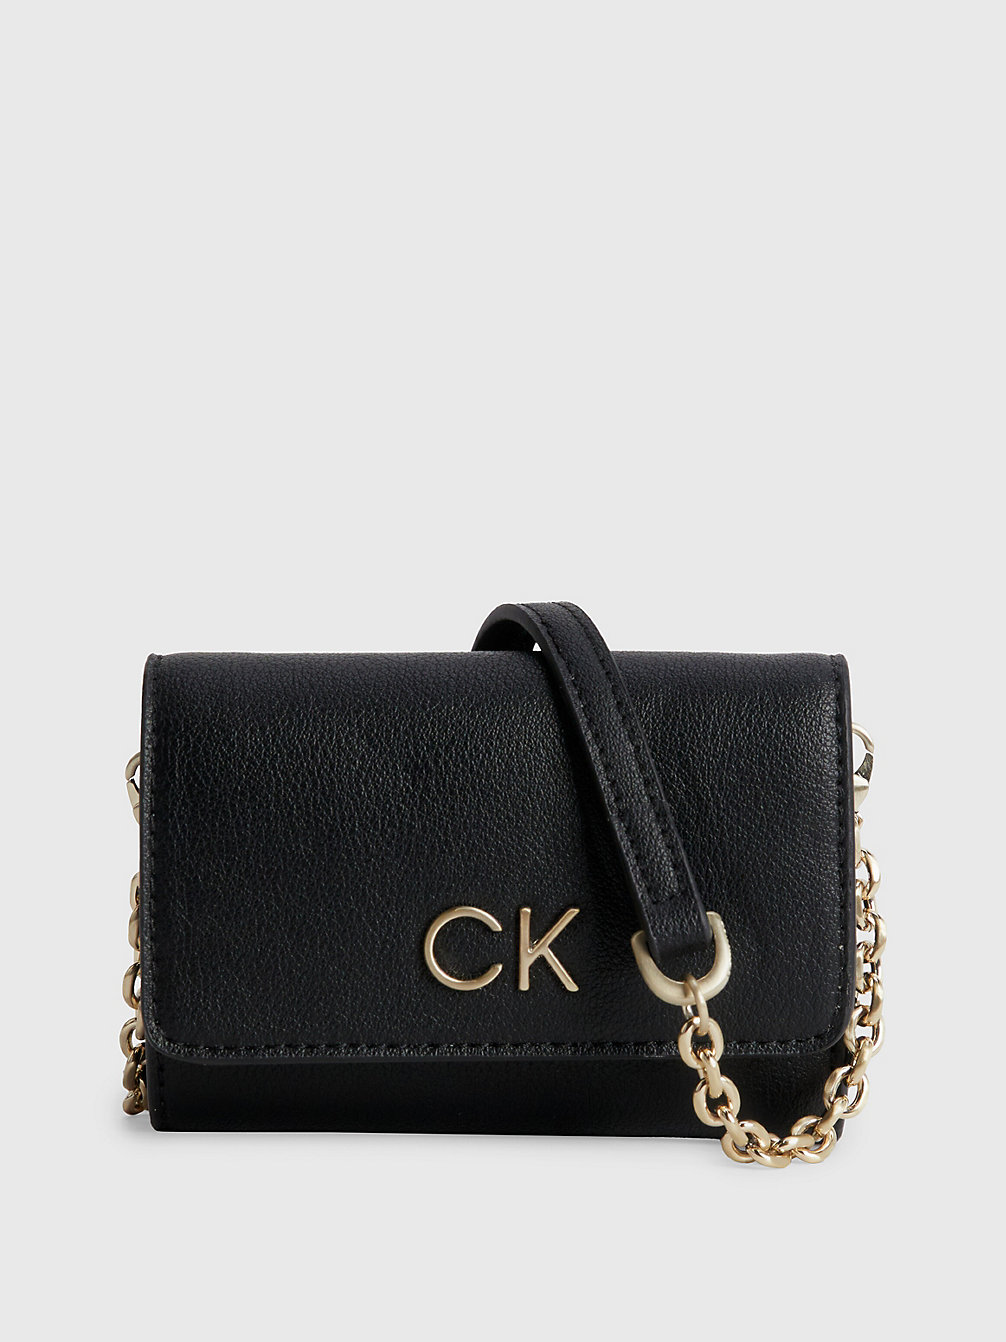 CK BLACK Dreifach Faltbare Portemonnaie-Tasche Aus Recyceltem Material undefined Damen Calvin Klein